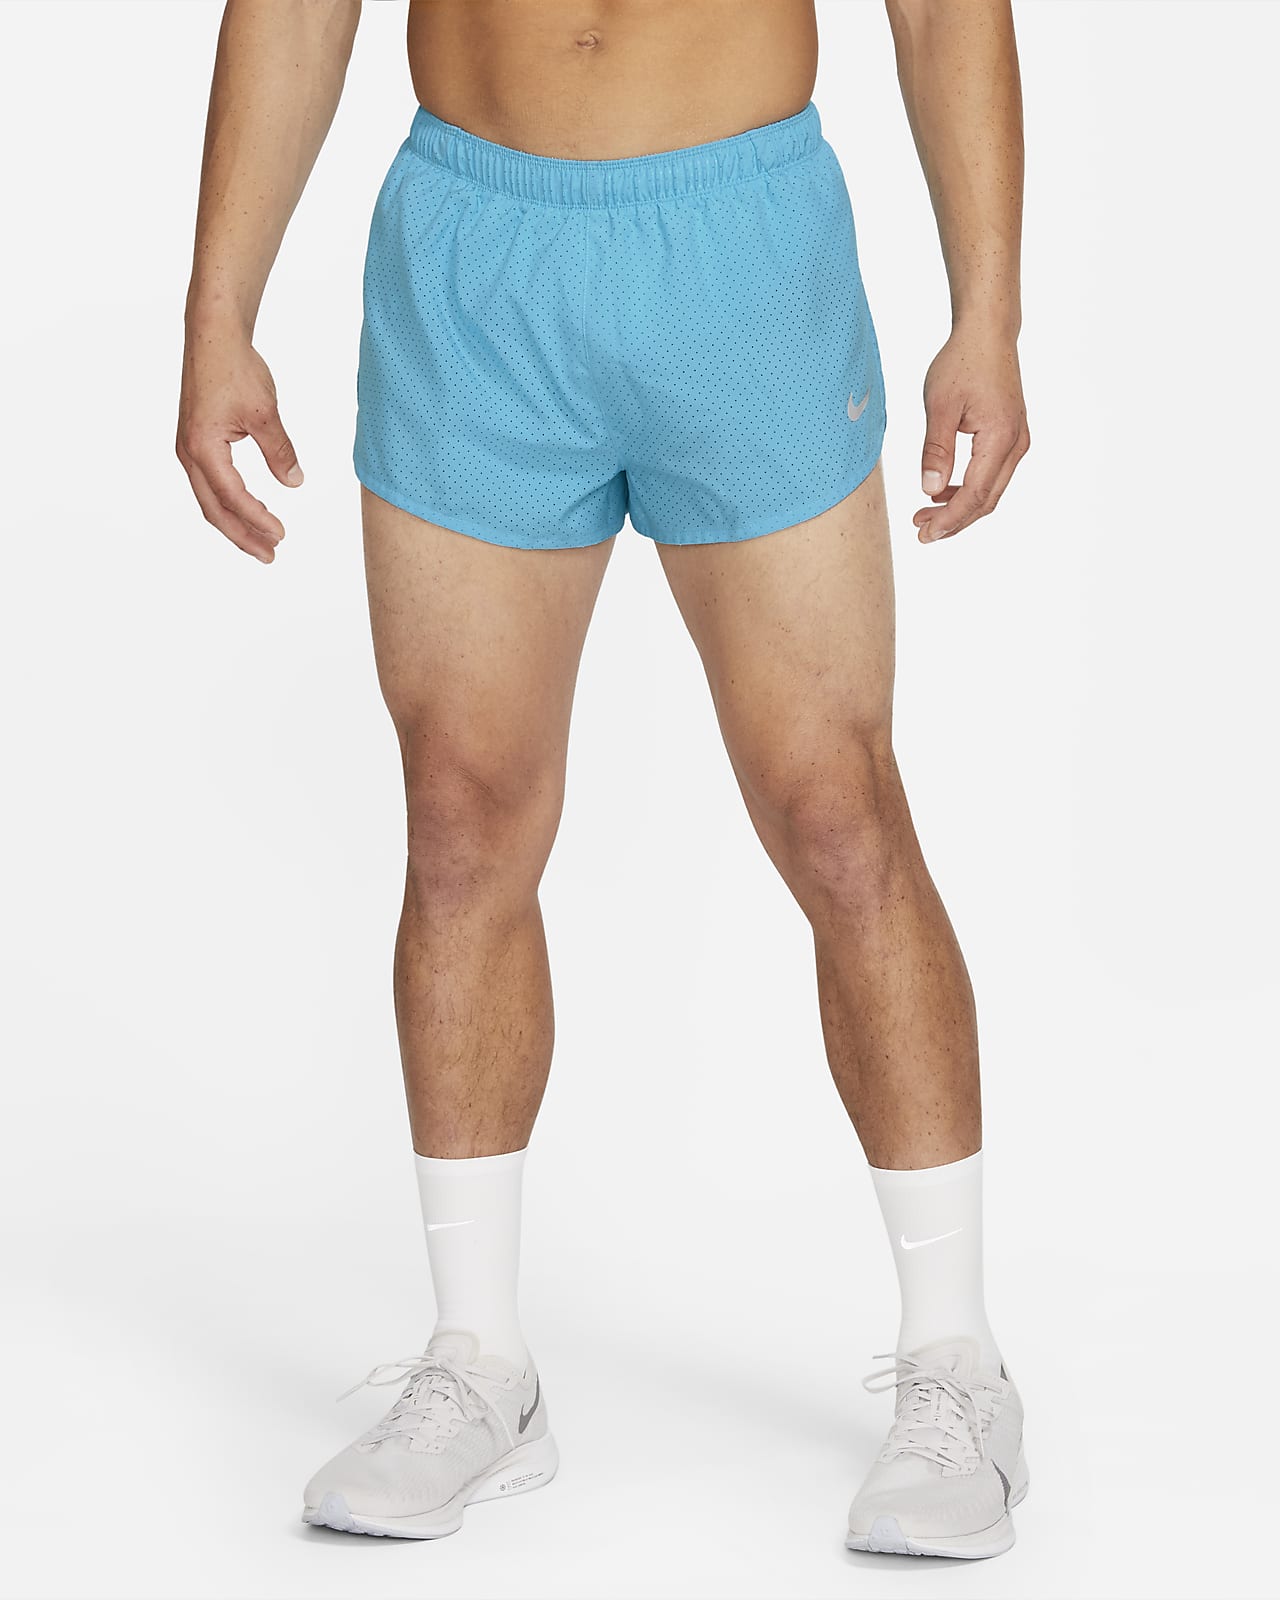 nike shorts with under shorts